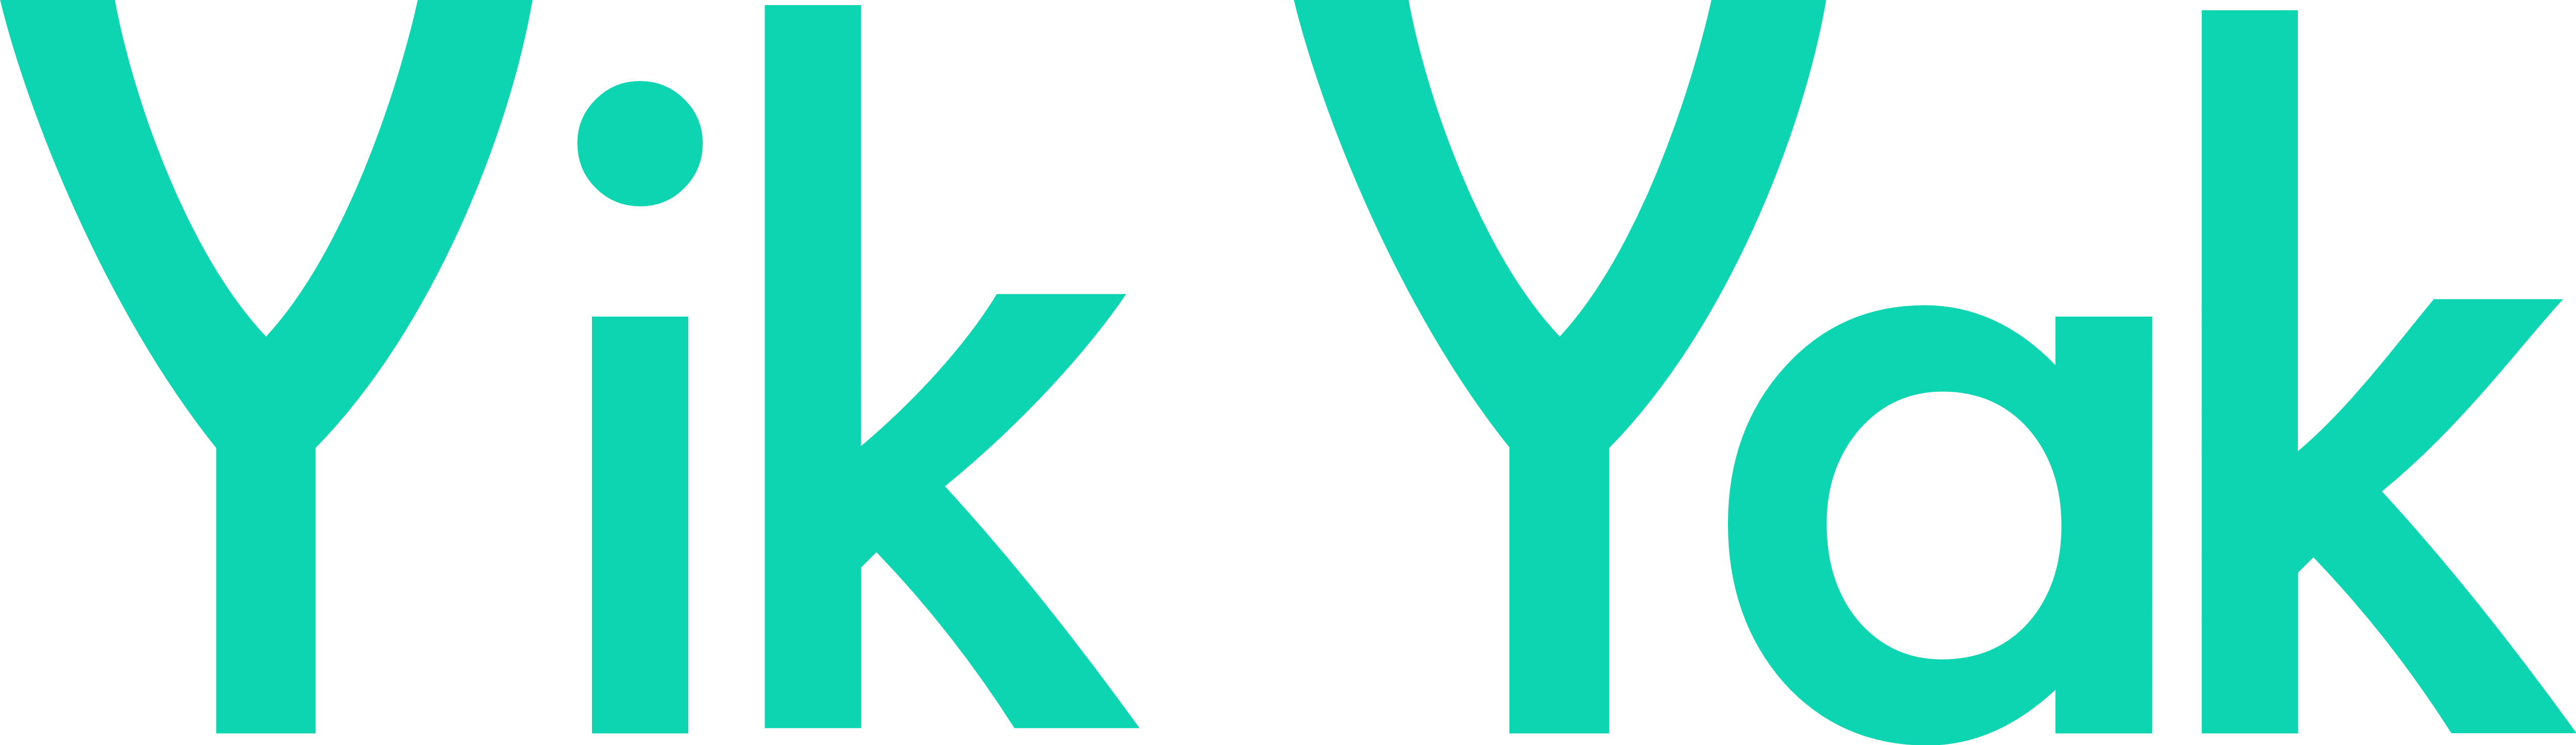 Yik Yak - Logos Download